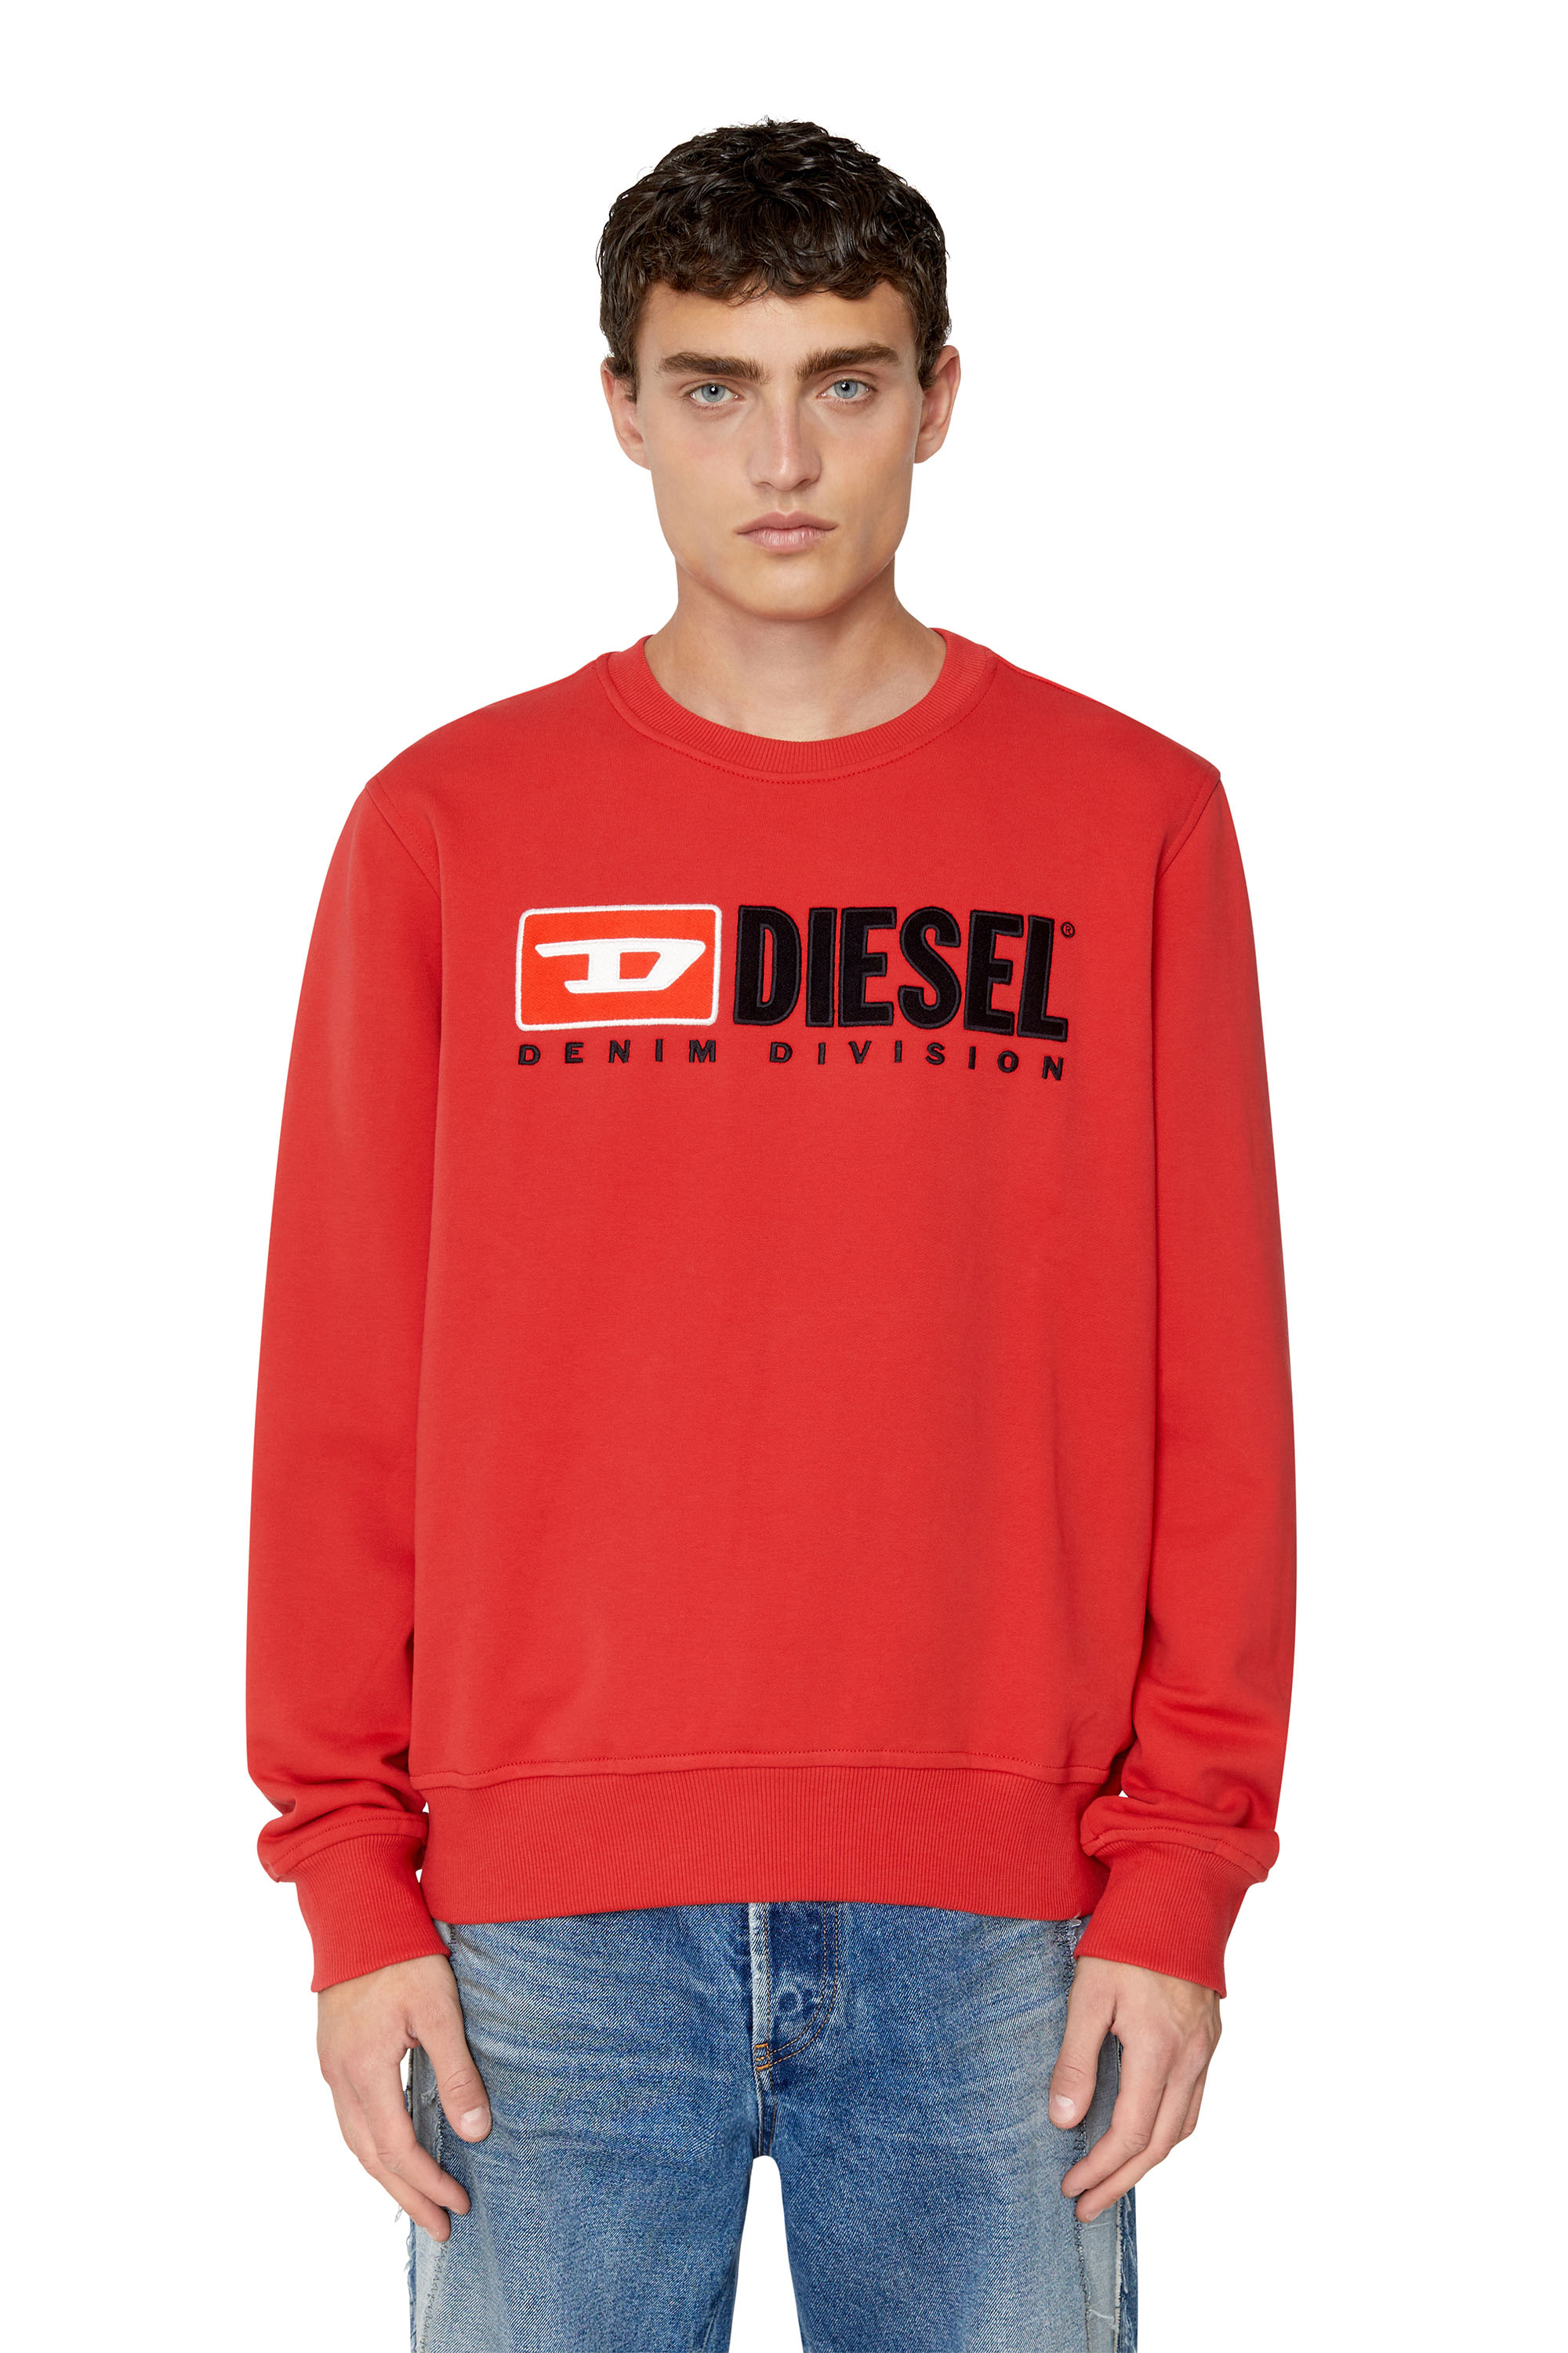 Diesel - S-GINN-DIV, Rot - Image 2